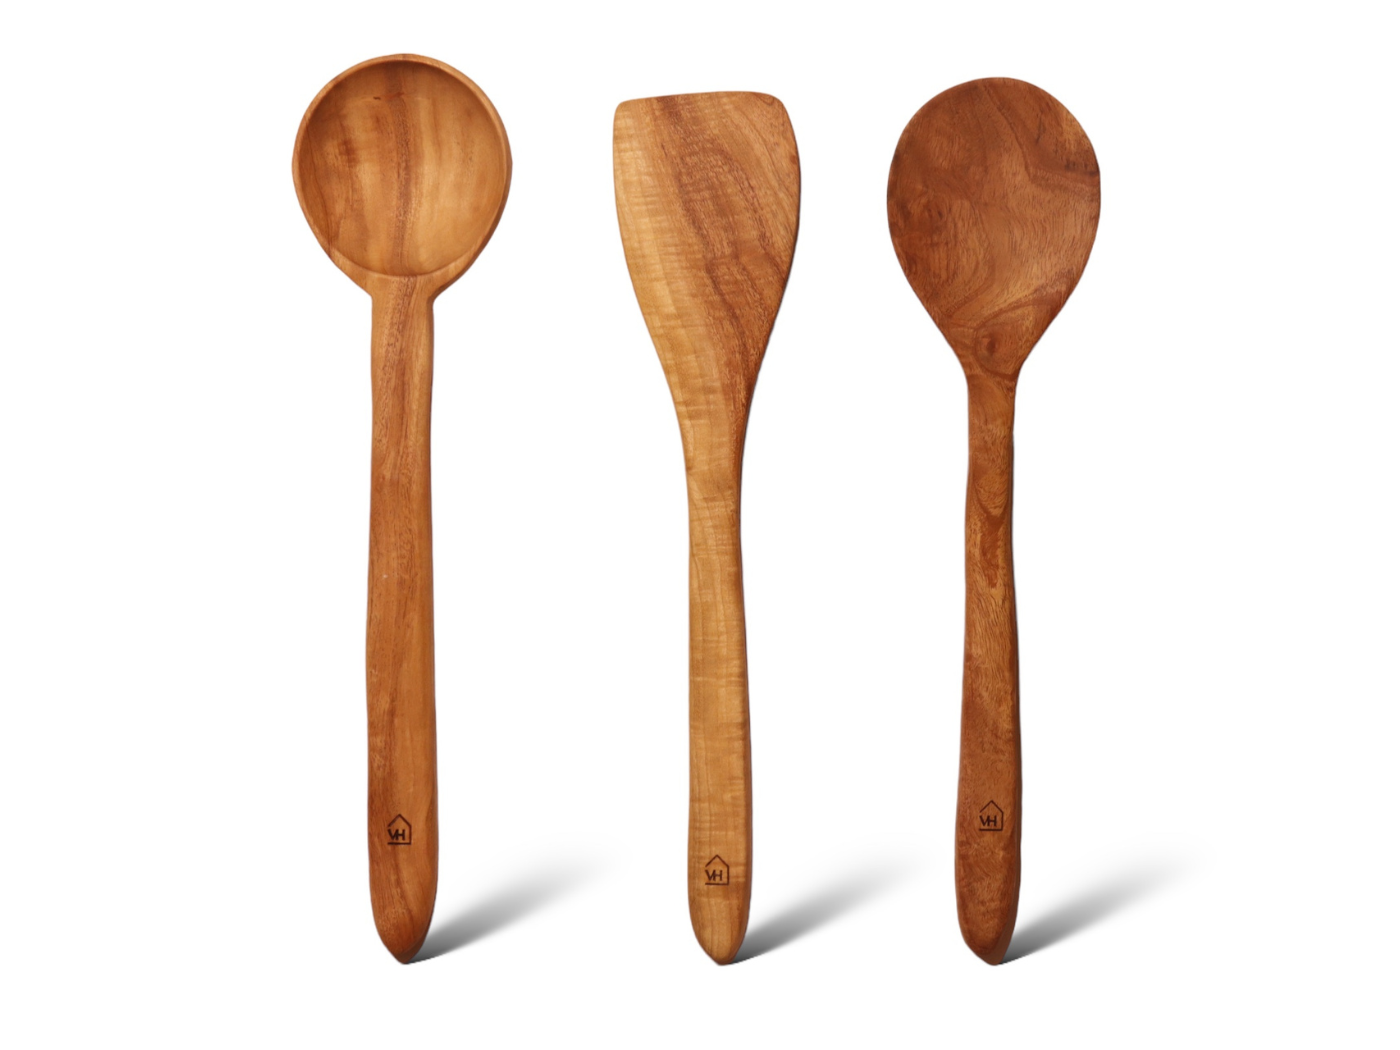 Neem Wood Kitchen Tools